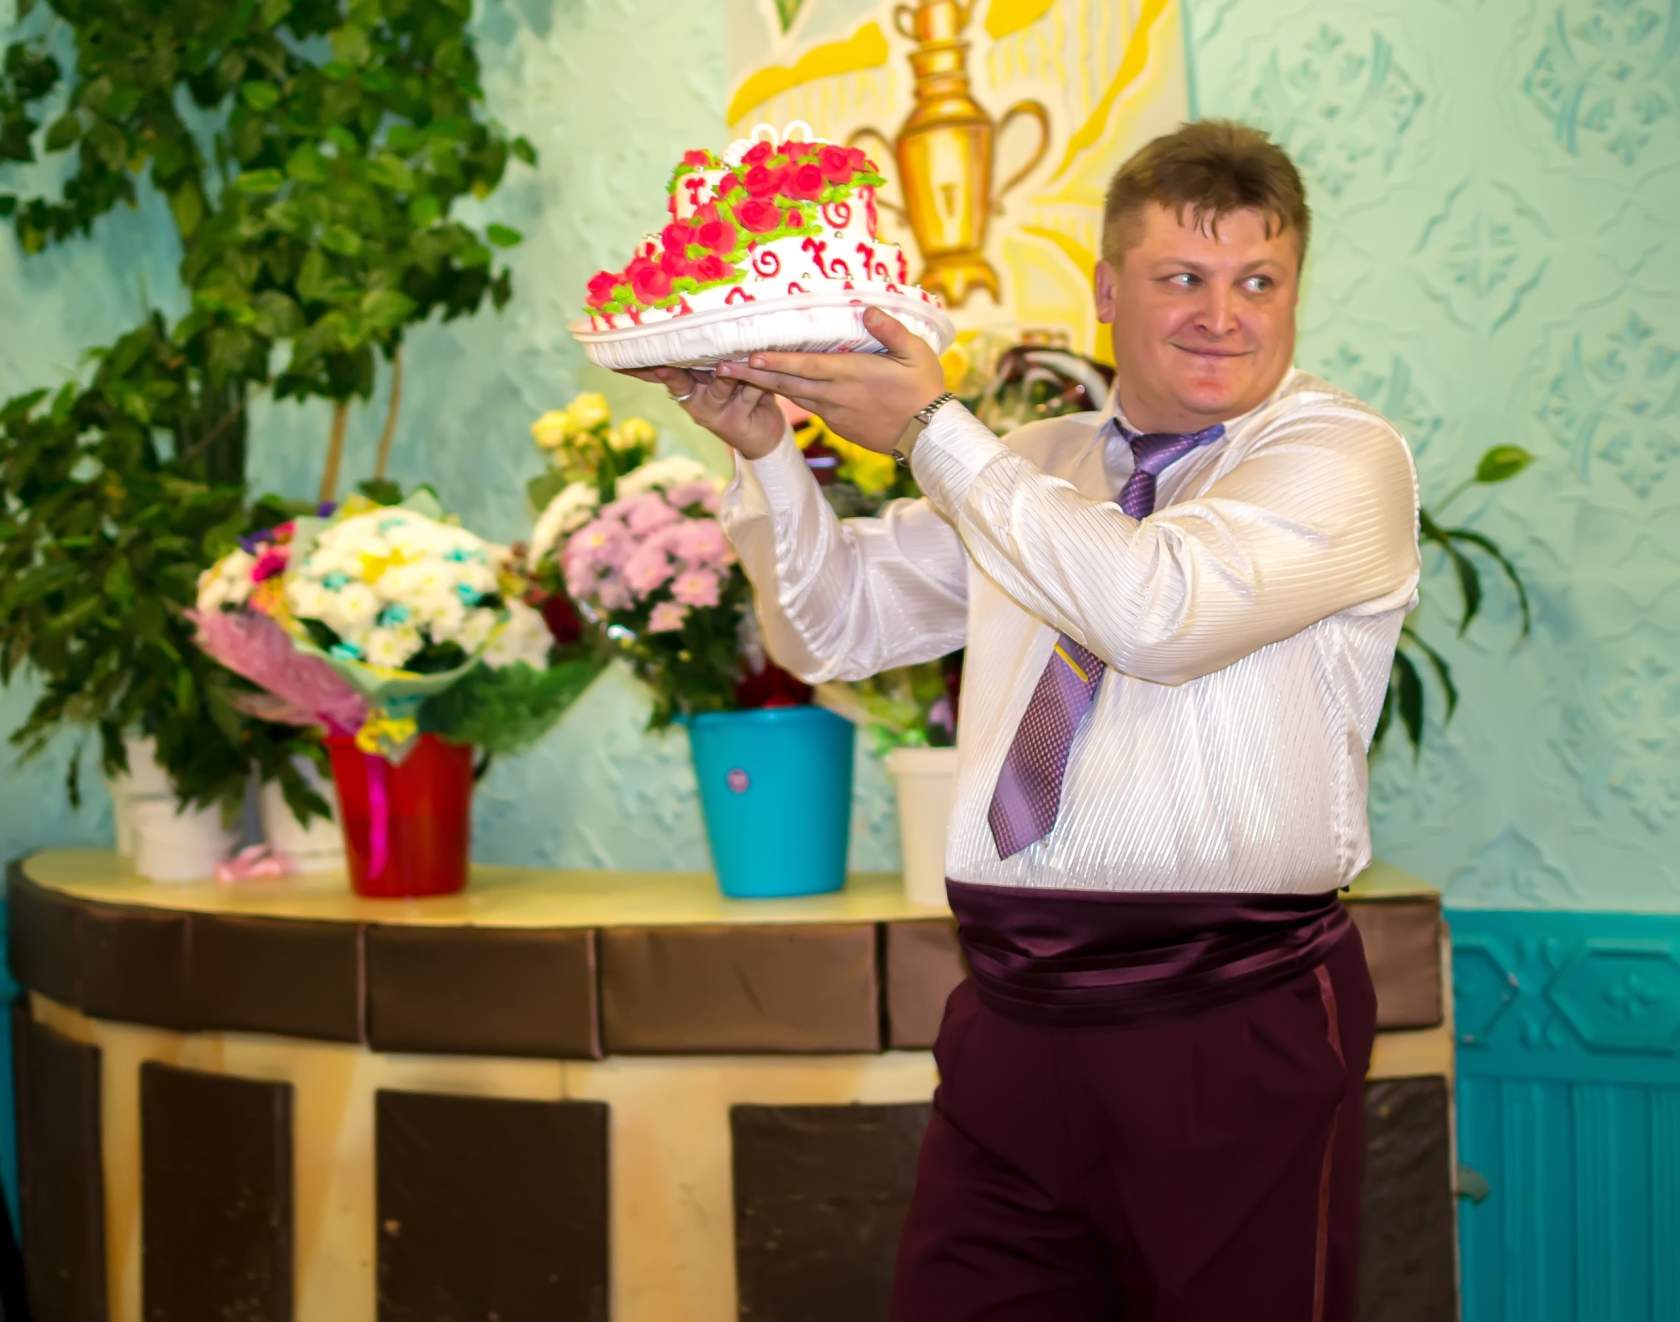 Тамада на свадьбу, ведущий на юбилей, корпоратив - Серов - фотография